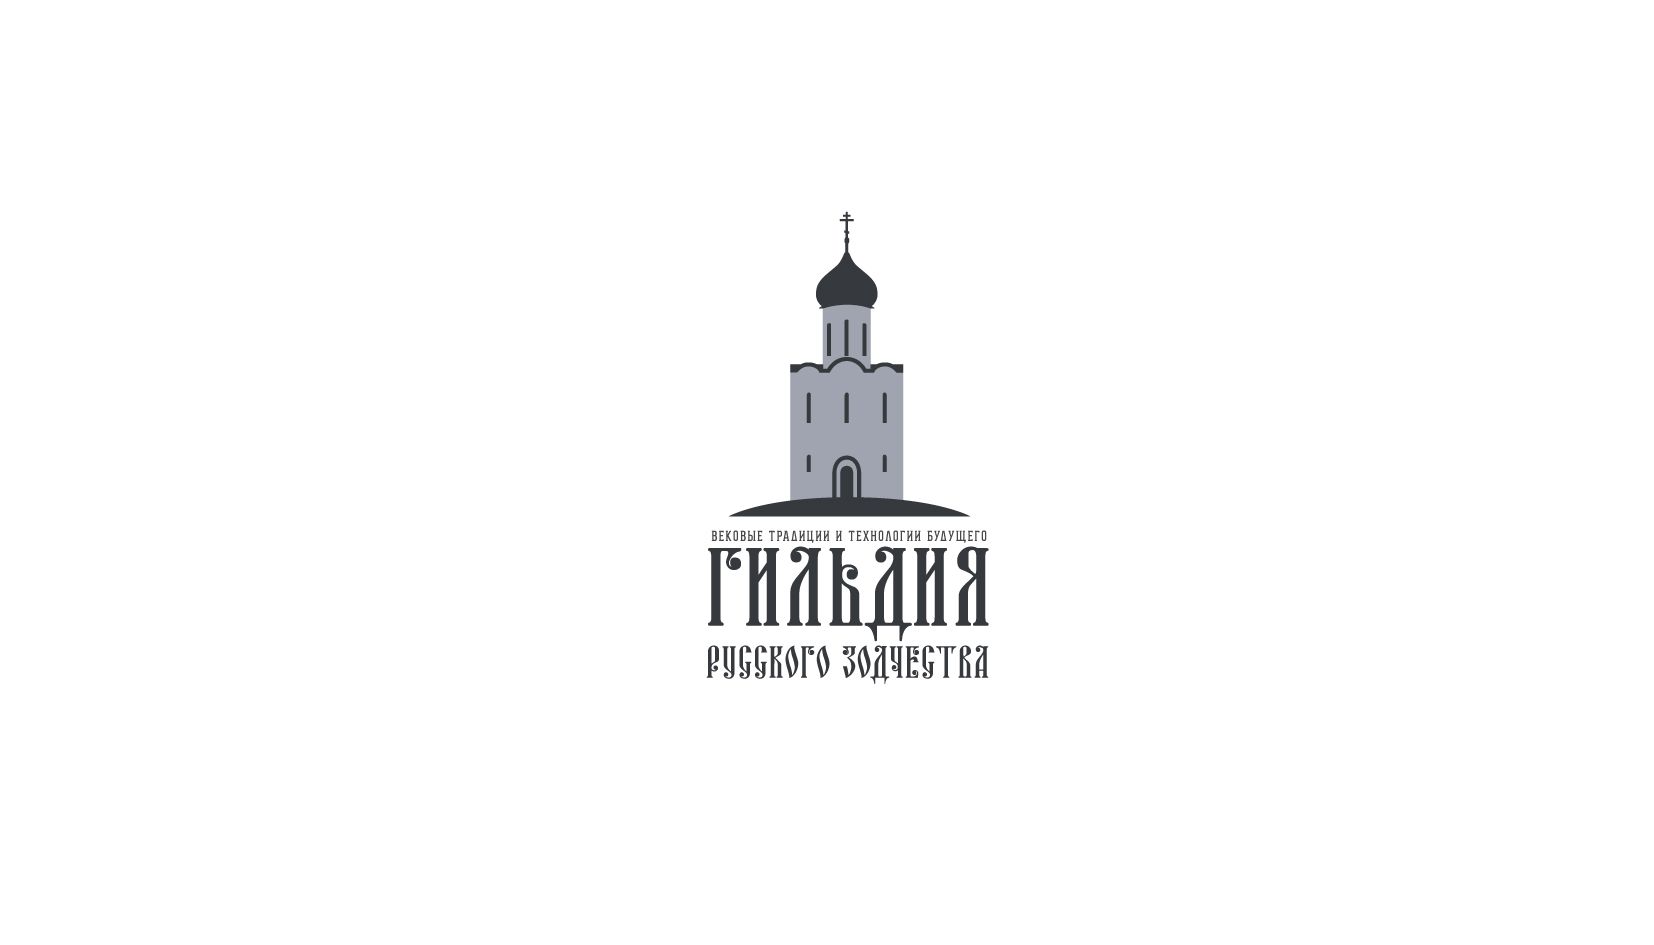 Логотип для Гильдия русского зодчества - дизайнер andblin61